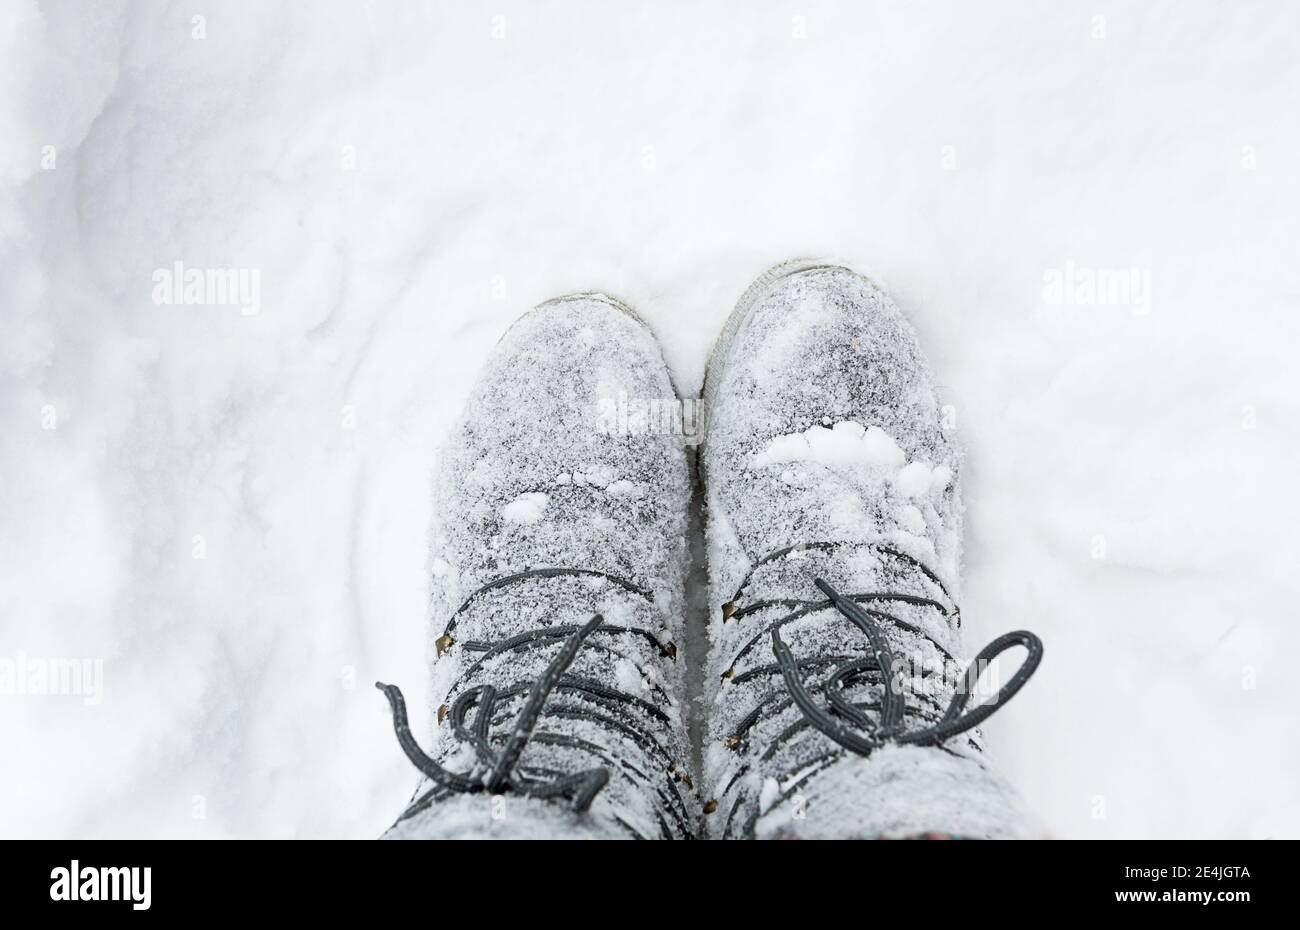 Les bottes des lacets sont recouvertes de neige. Hiver, chutes de neige, froid, chaussures en laine feutrée, protection contre le gel, résistance au gel. Vie dans le village, cott Banque D'Images